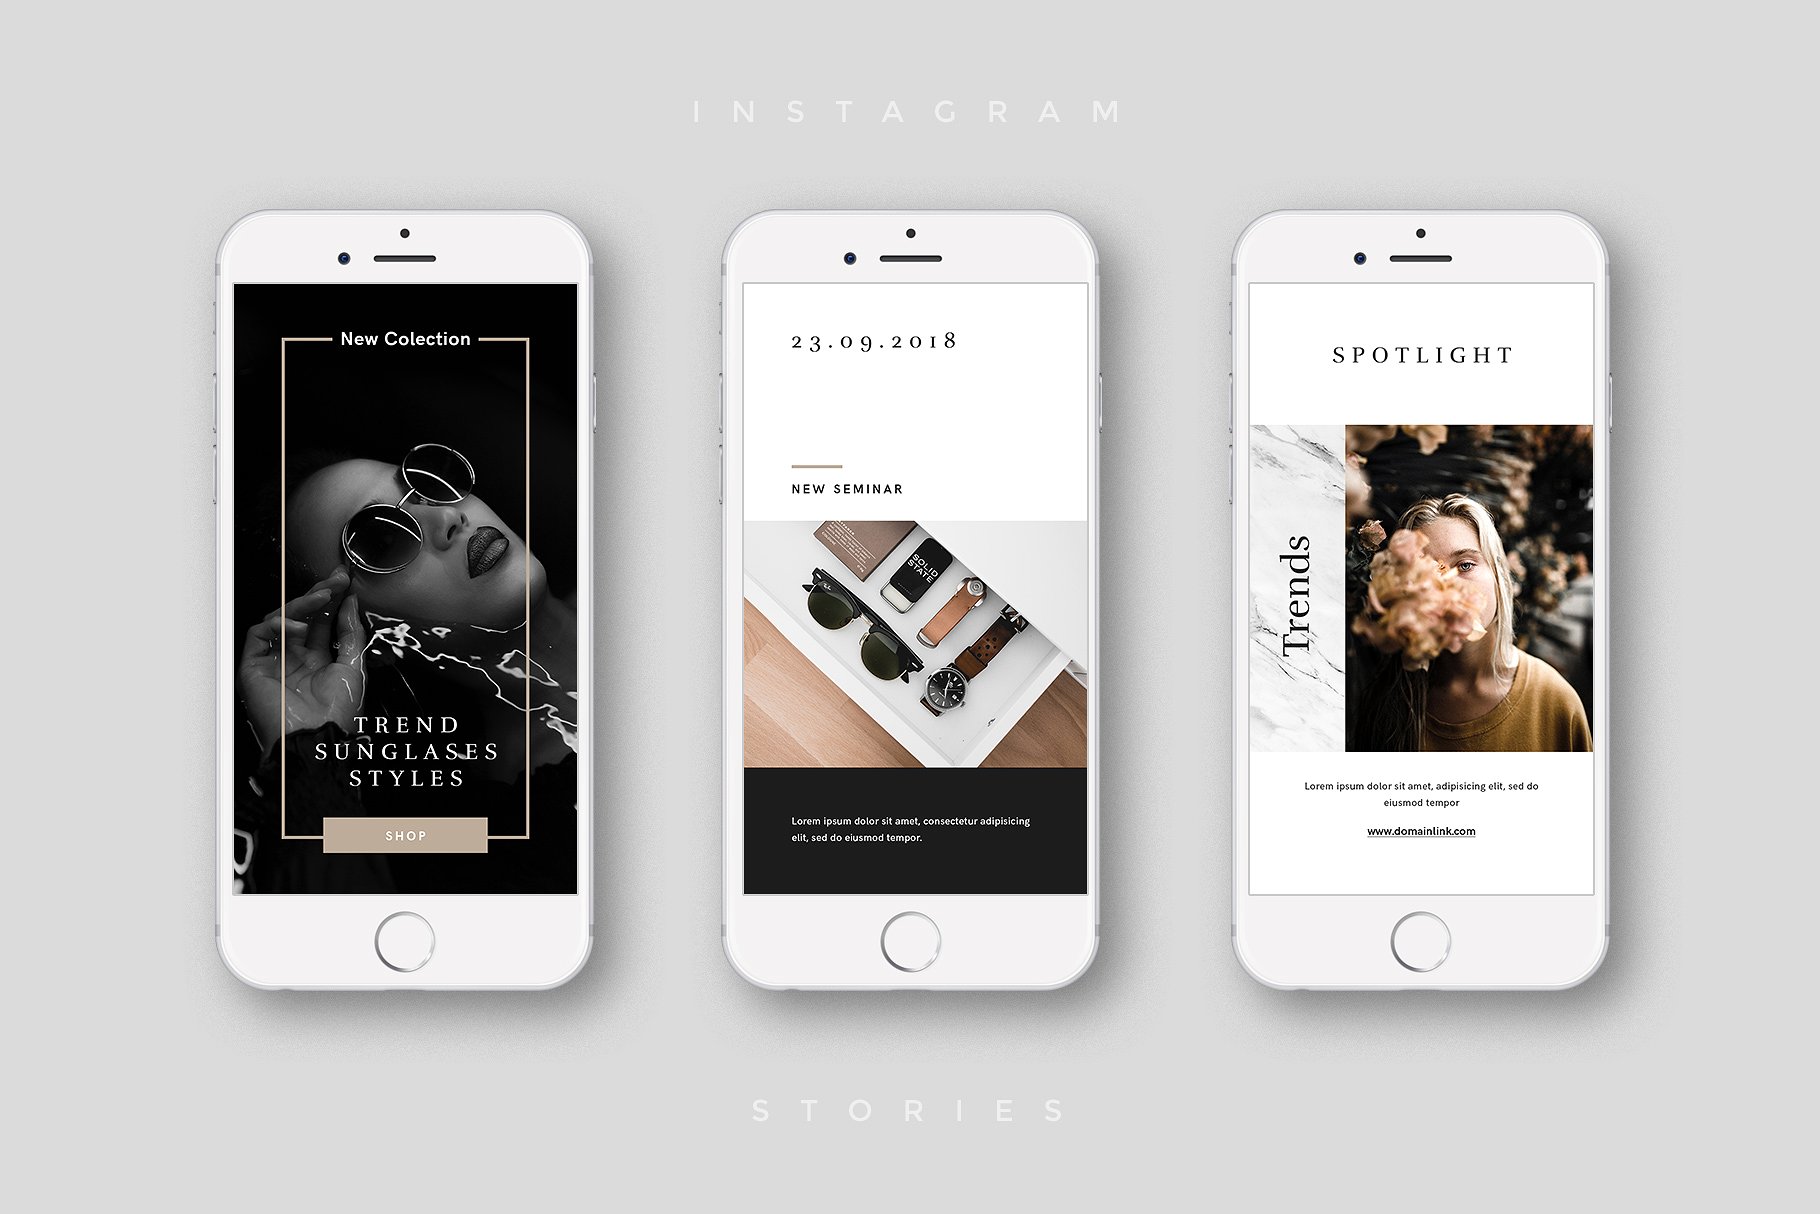 奢侈品电商社交媒体Ins故事贴图模板蚂蚁素材精选 Luxury Instagram Stories Pack插图(5)